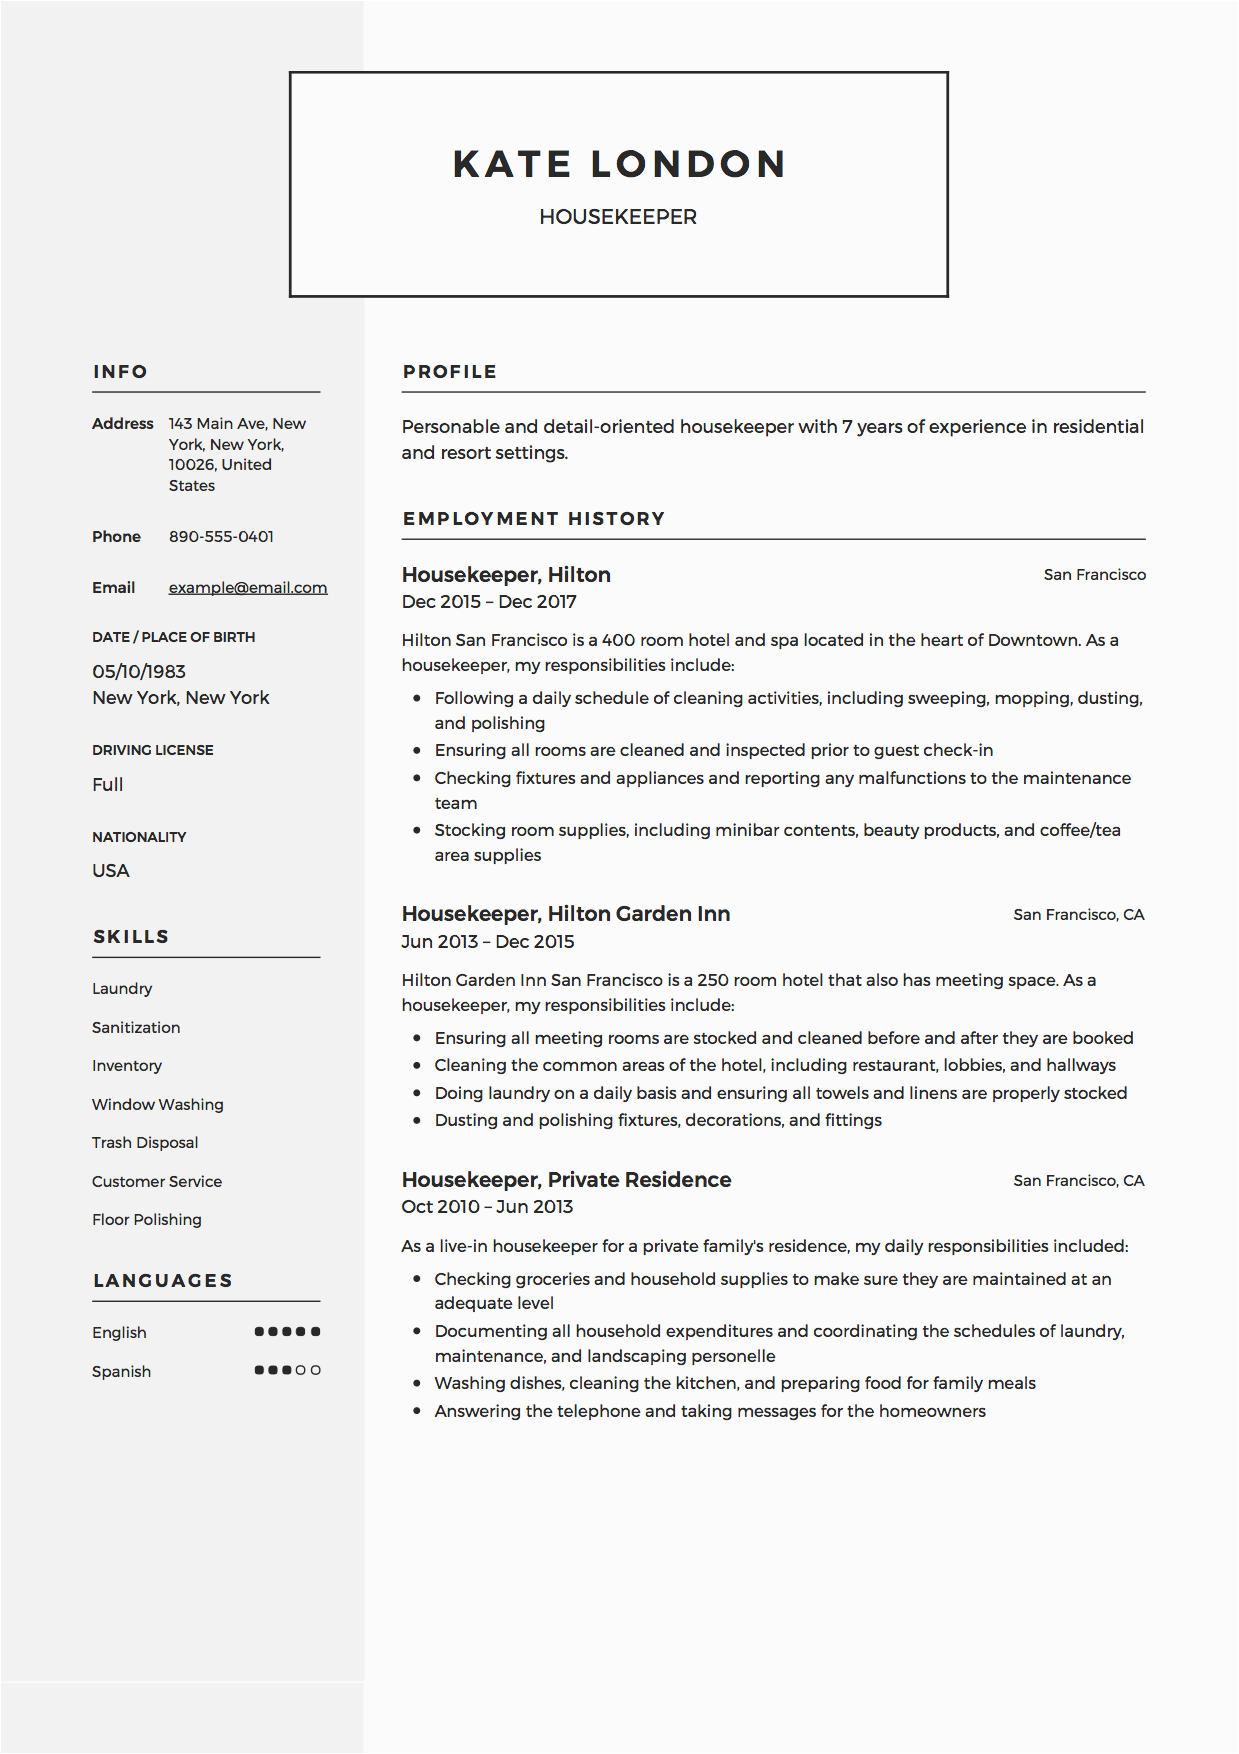 Sample Of Resume for House Keeper Resume Guide Housekpeer 12 Resume Samples Pdf